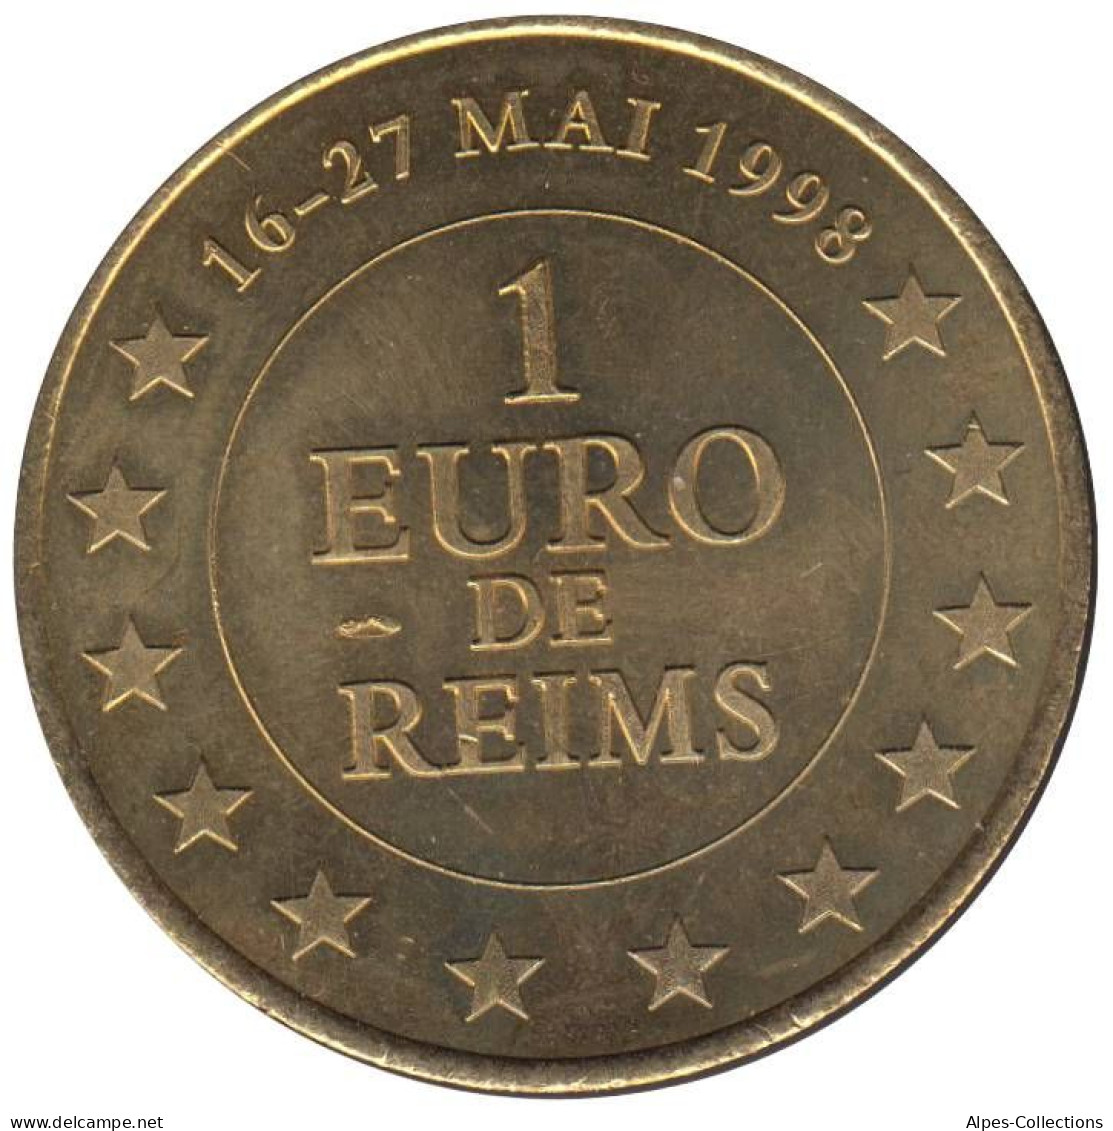 REIMS - EU0010.1 - 1 EURO DES VILLES -  Réf: T545 - 1998 - Euro Der Städte